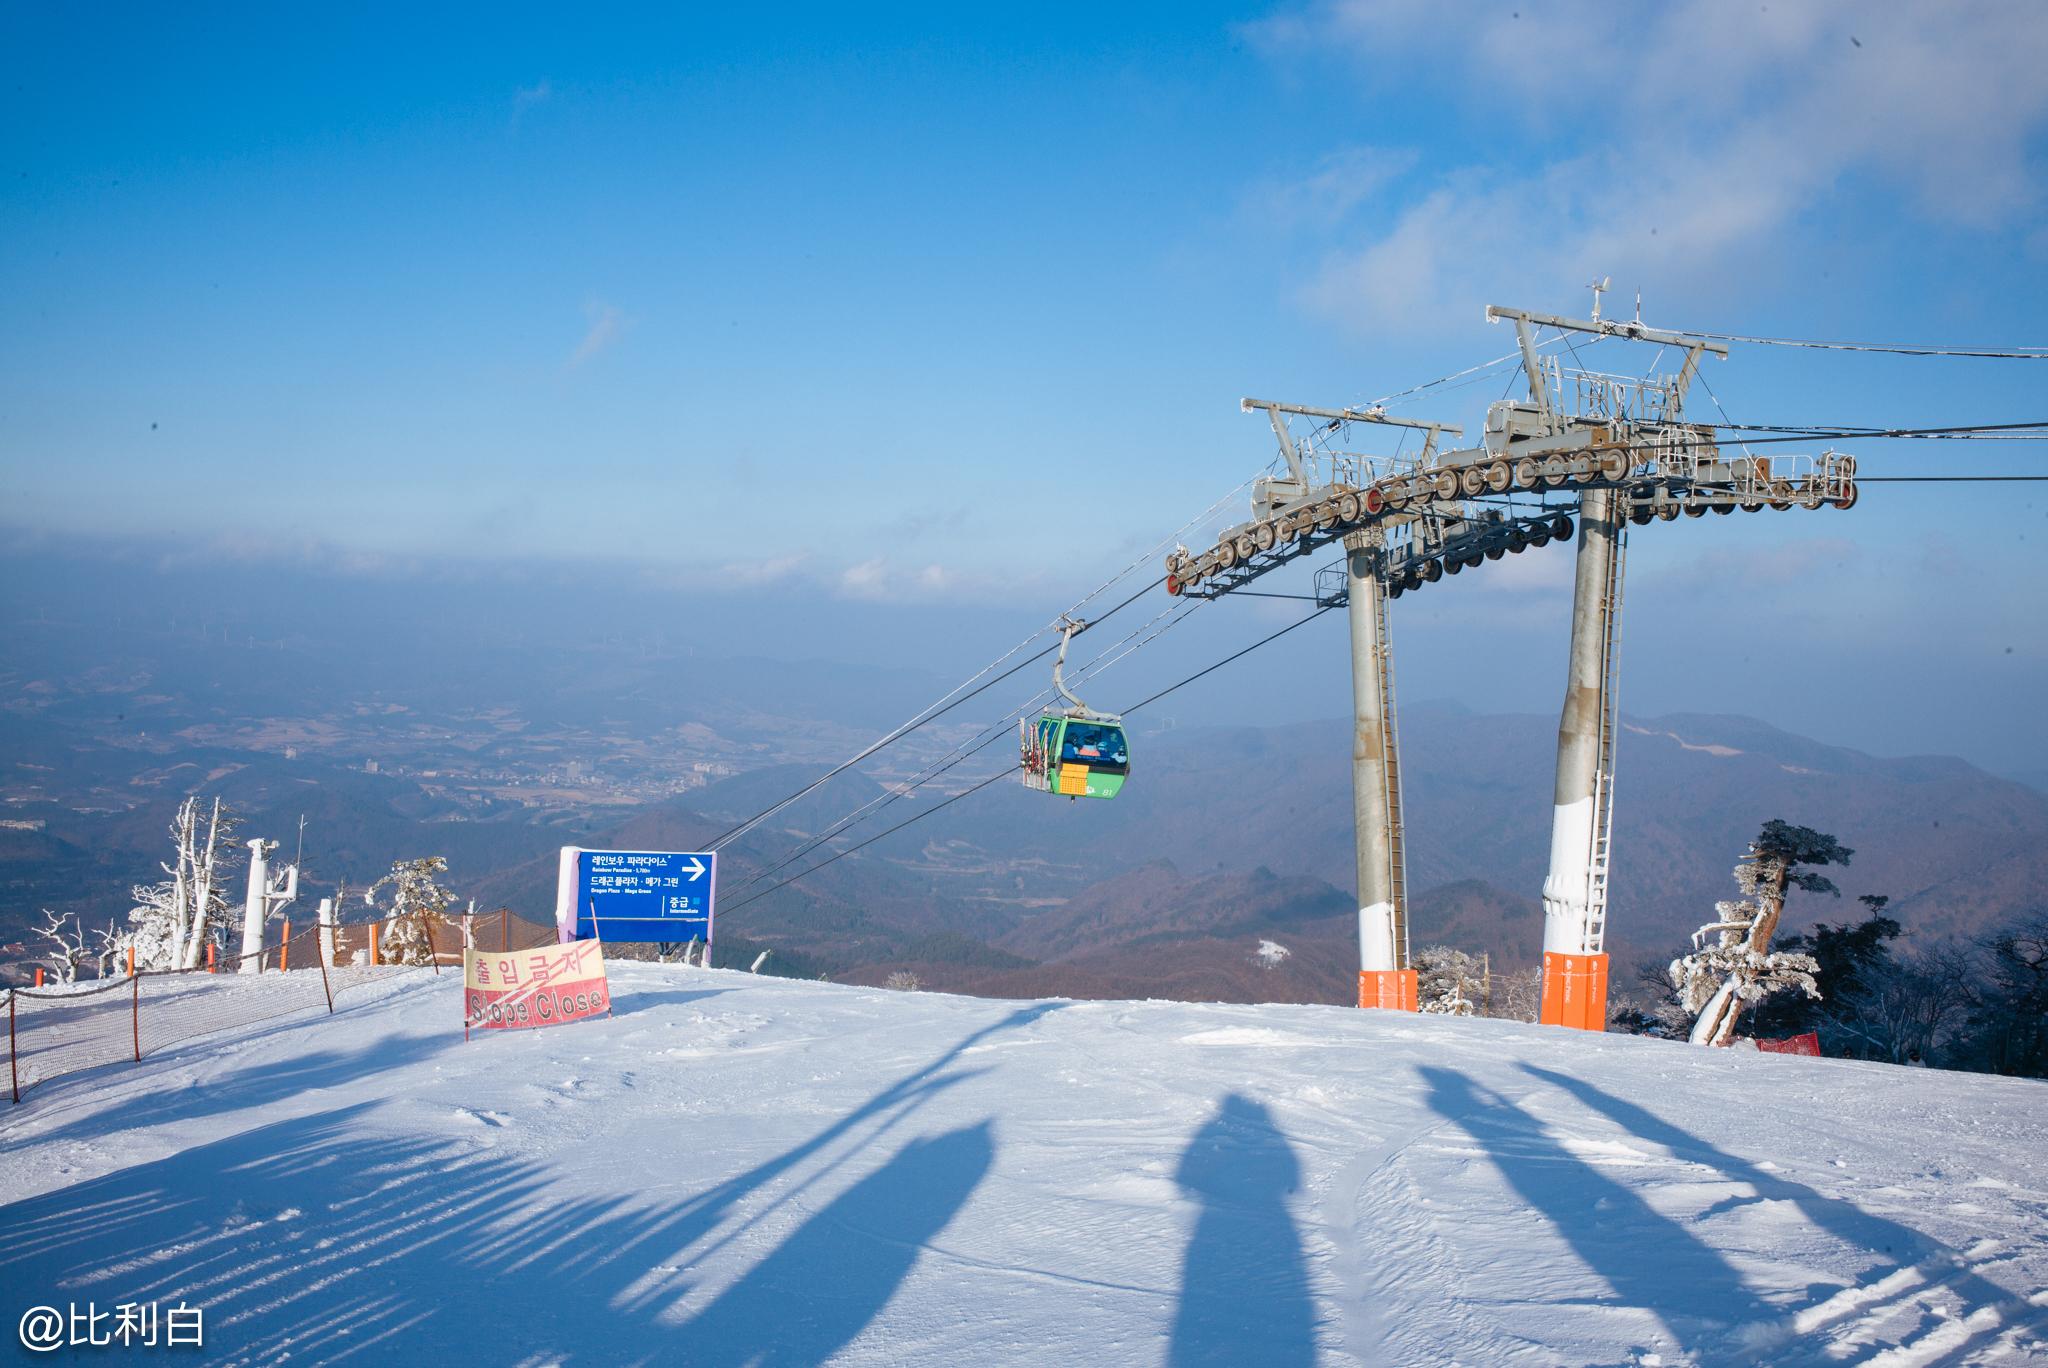 疯狂的夜场和诱人美食——韩国江原道滑雪记 - 知乎